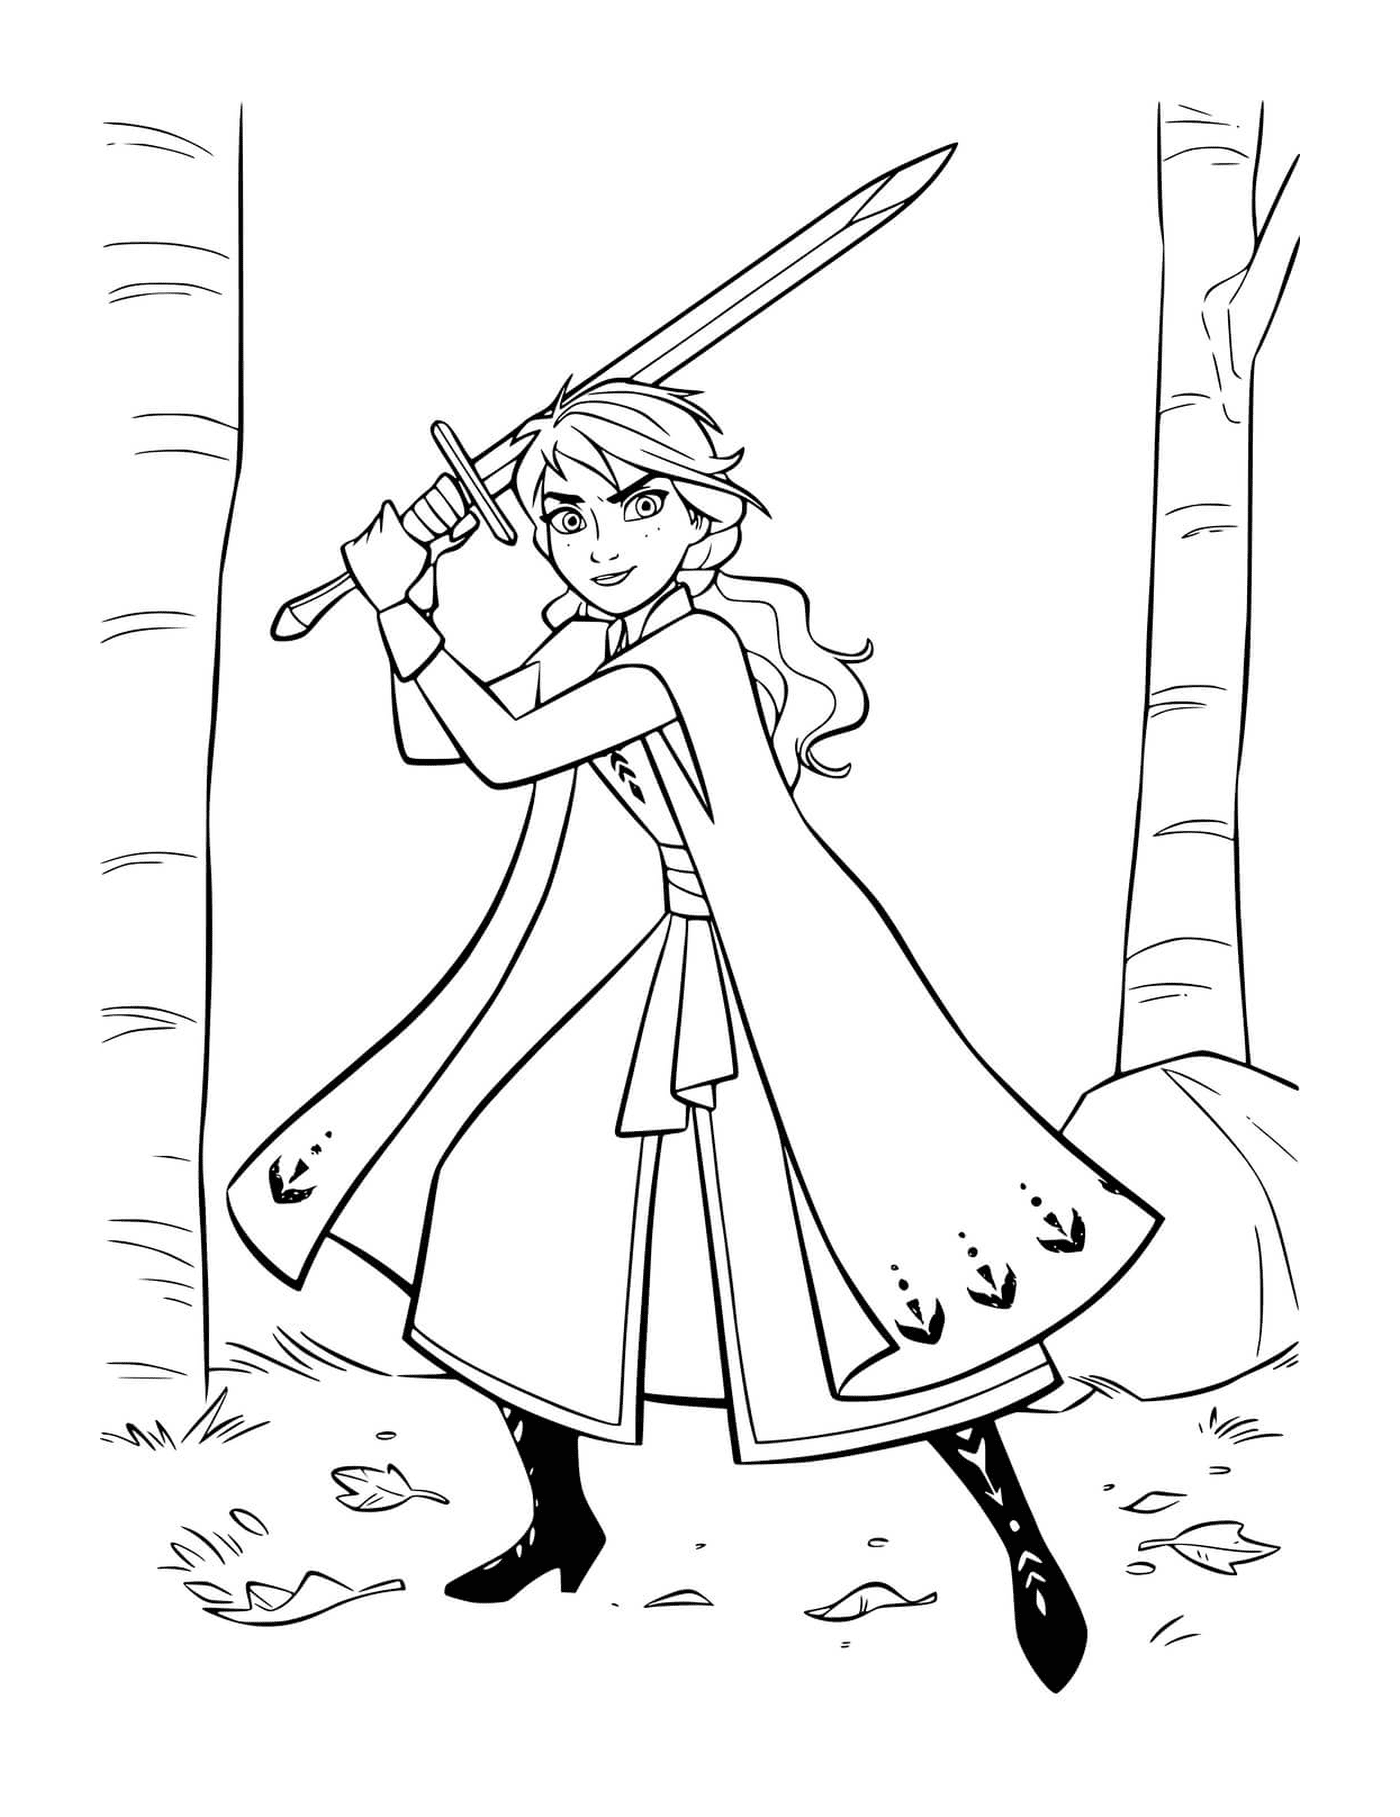  Anna verteidigt Königreich mit Schwert 